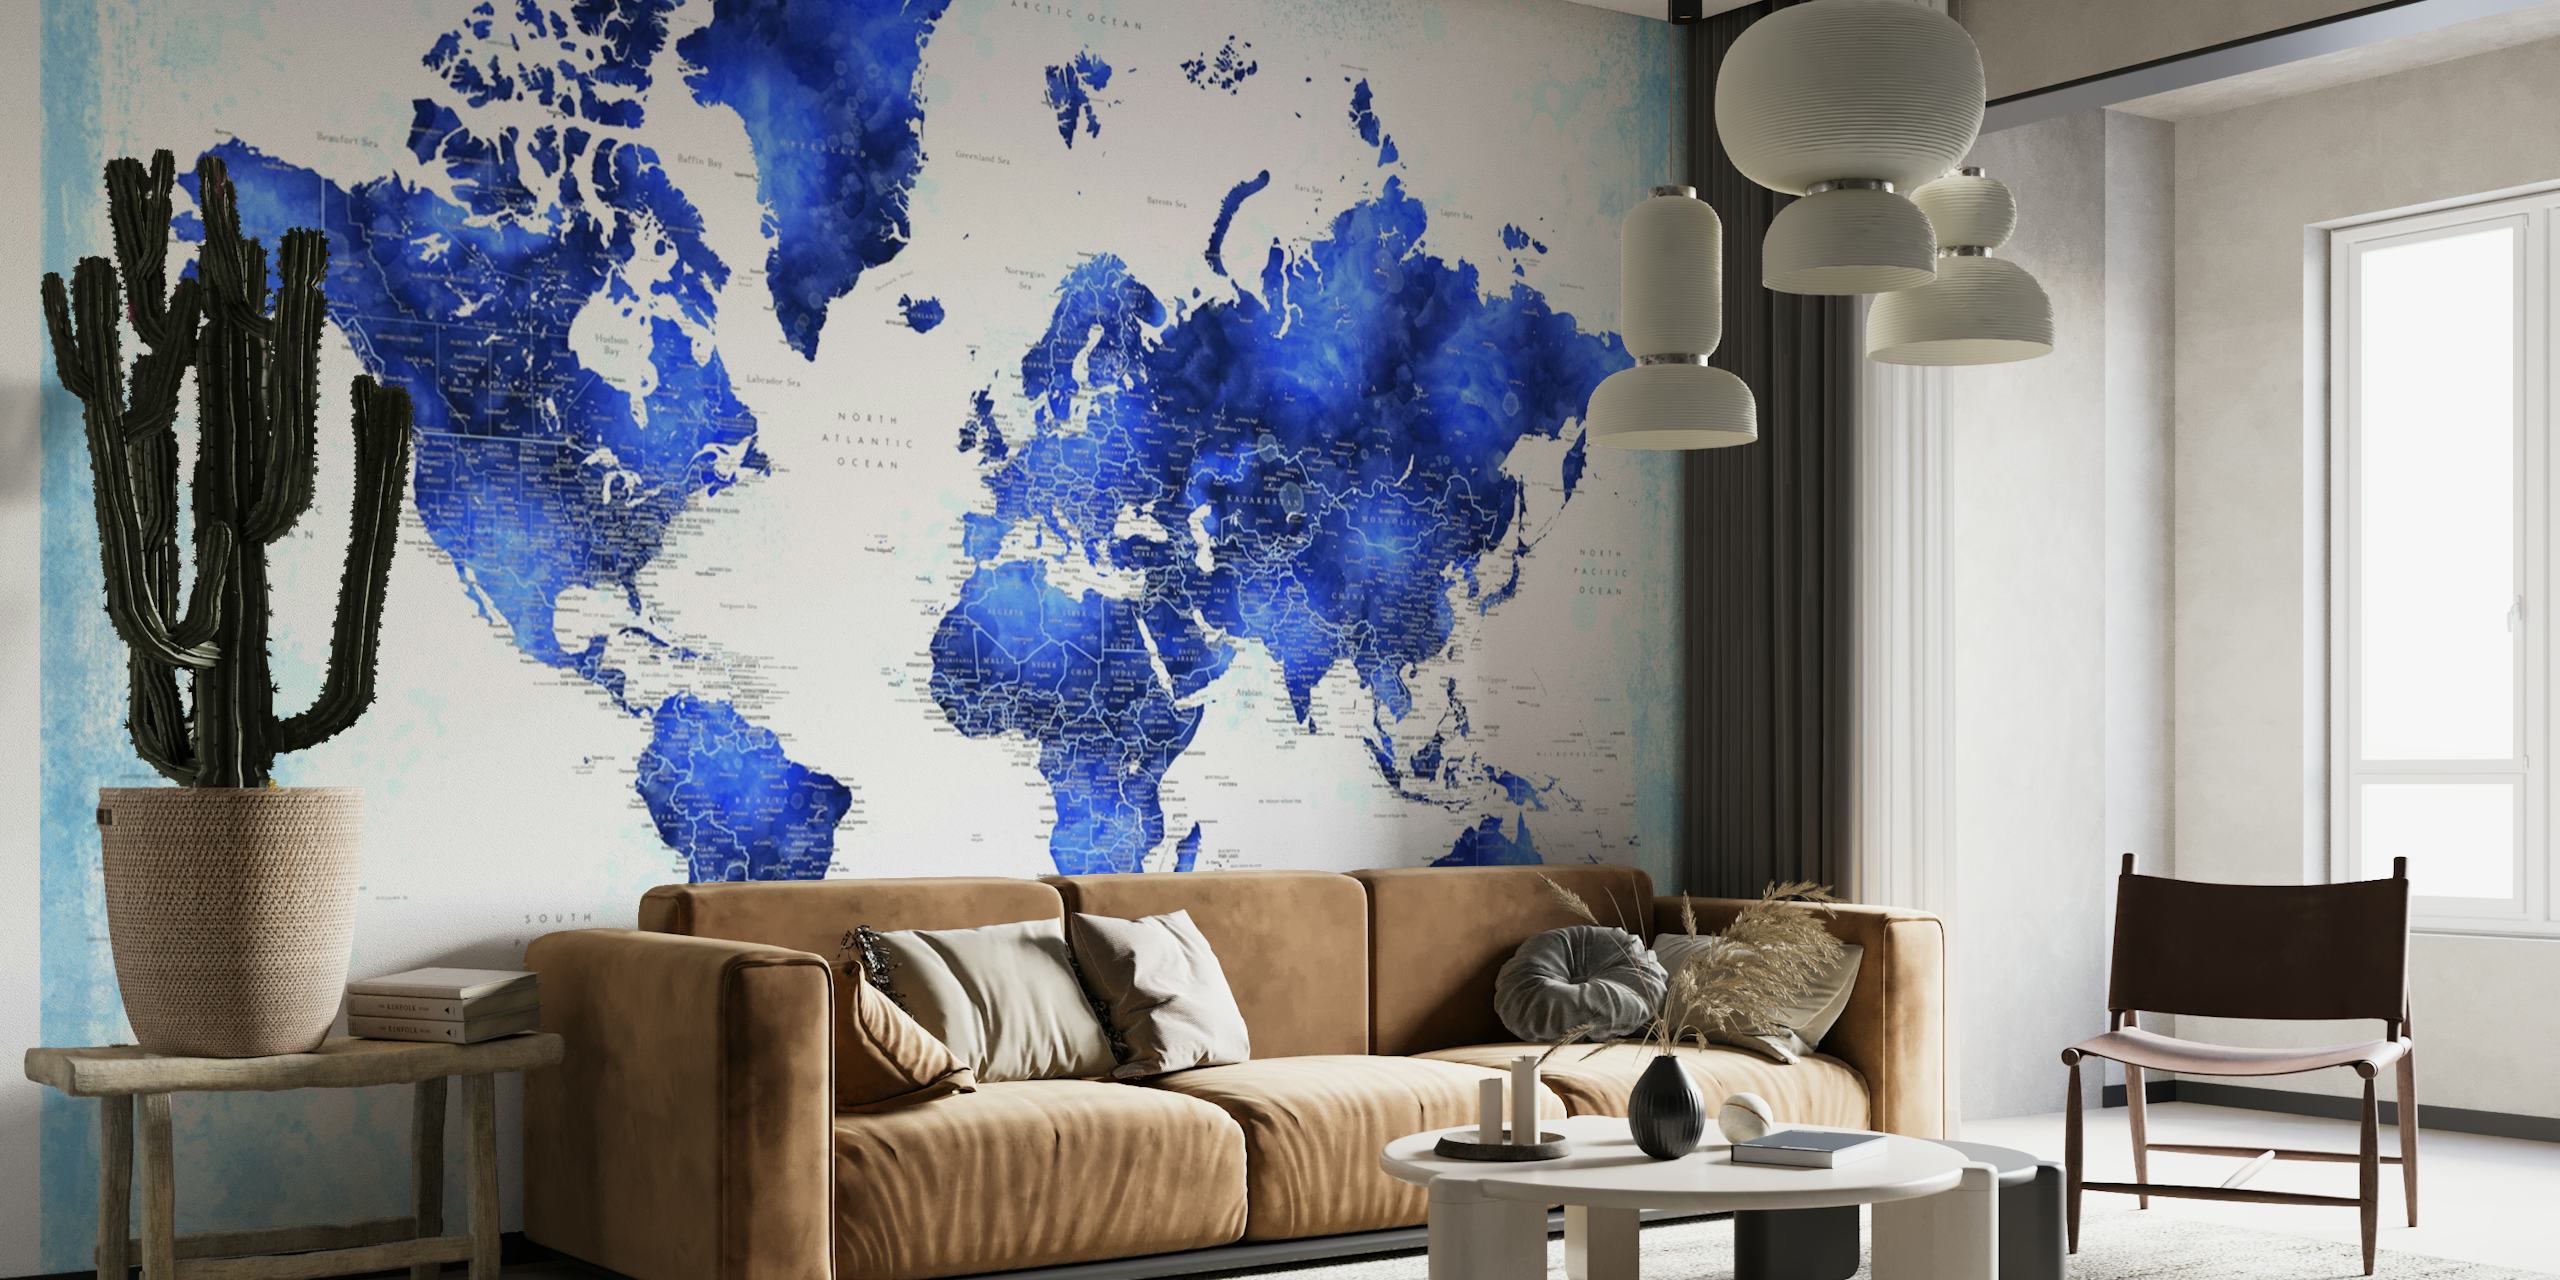 Detailliertes Wandgemälde mit Weltkarte von Georgino in Blautönen